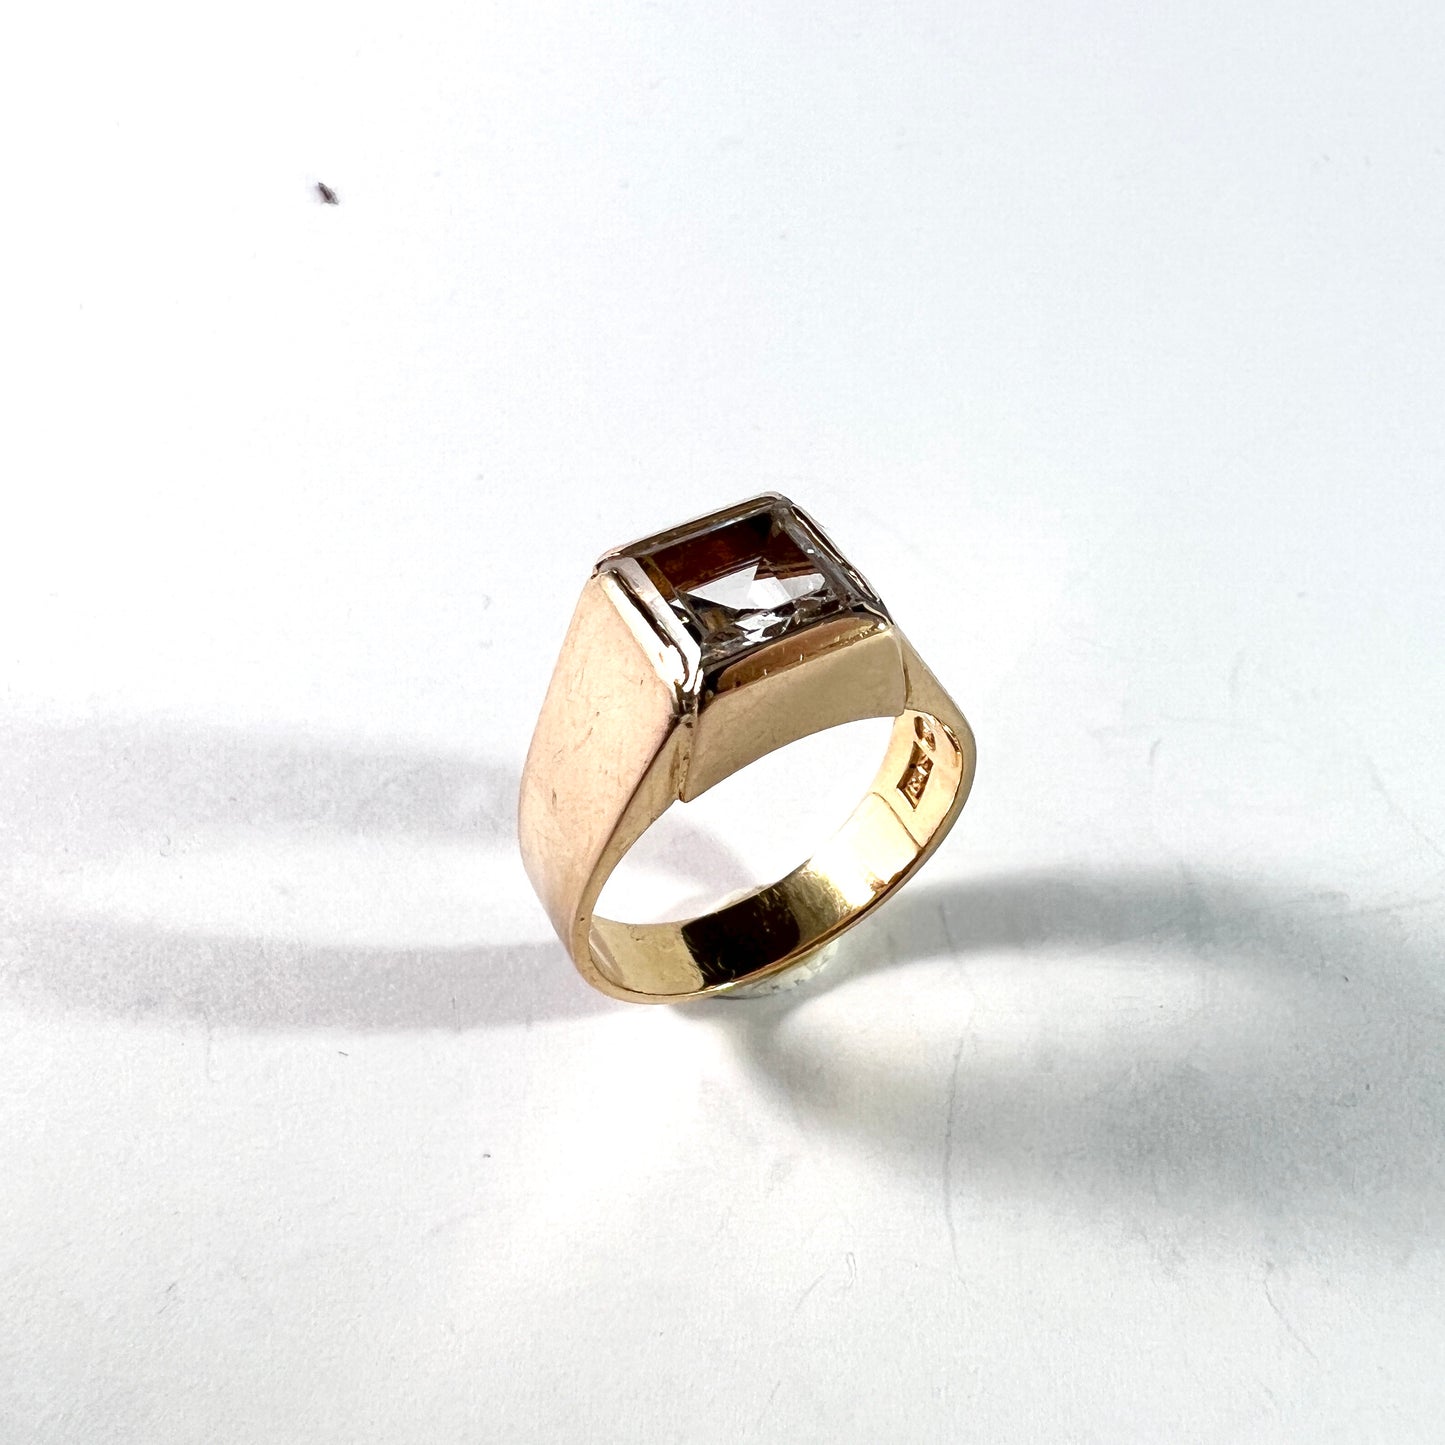 EG Johansson, Sweden 1969. Vintage 18k Gold Rock Crystal Ring. 5.8gram